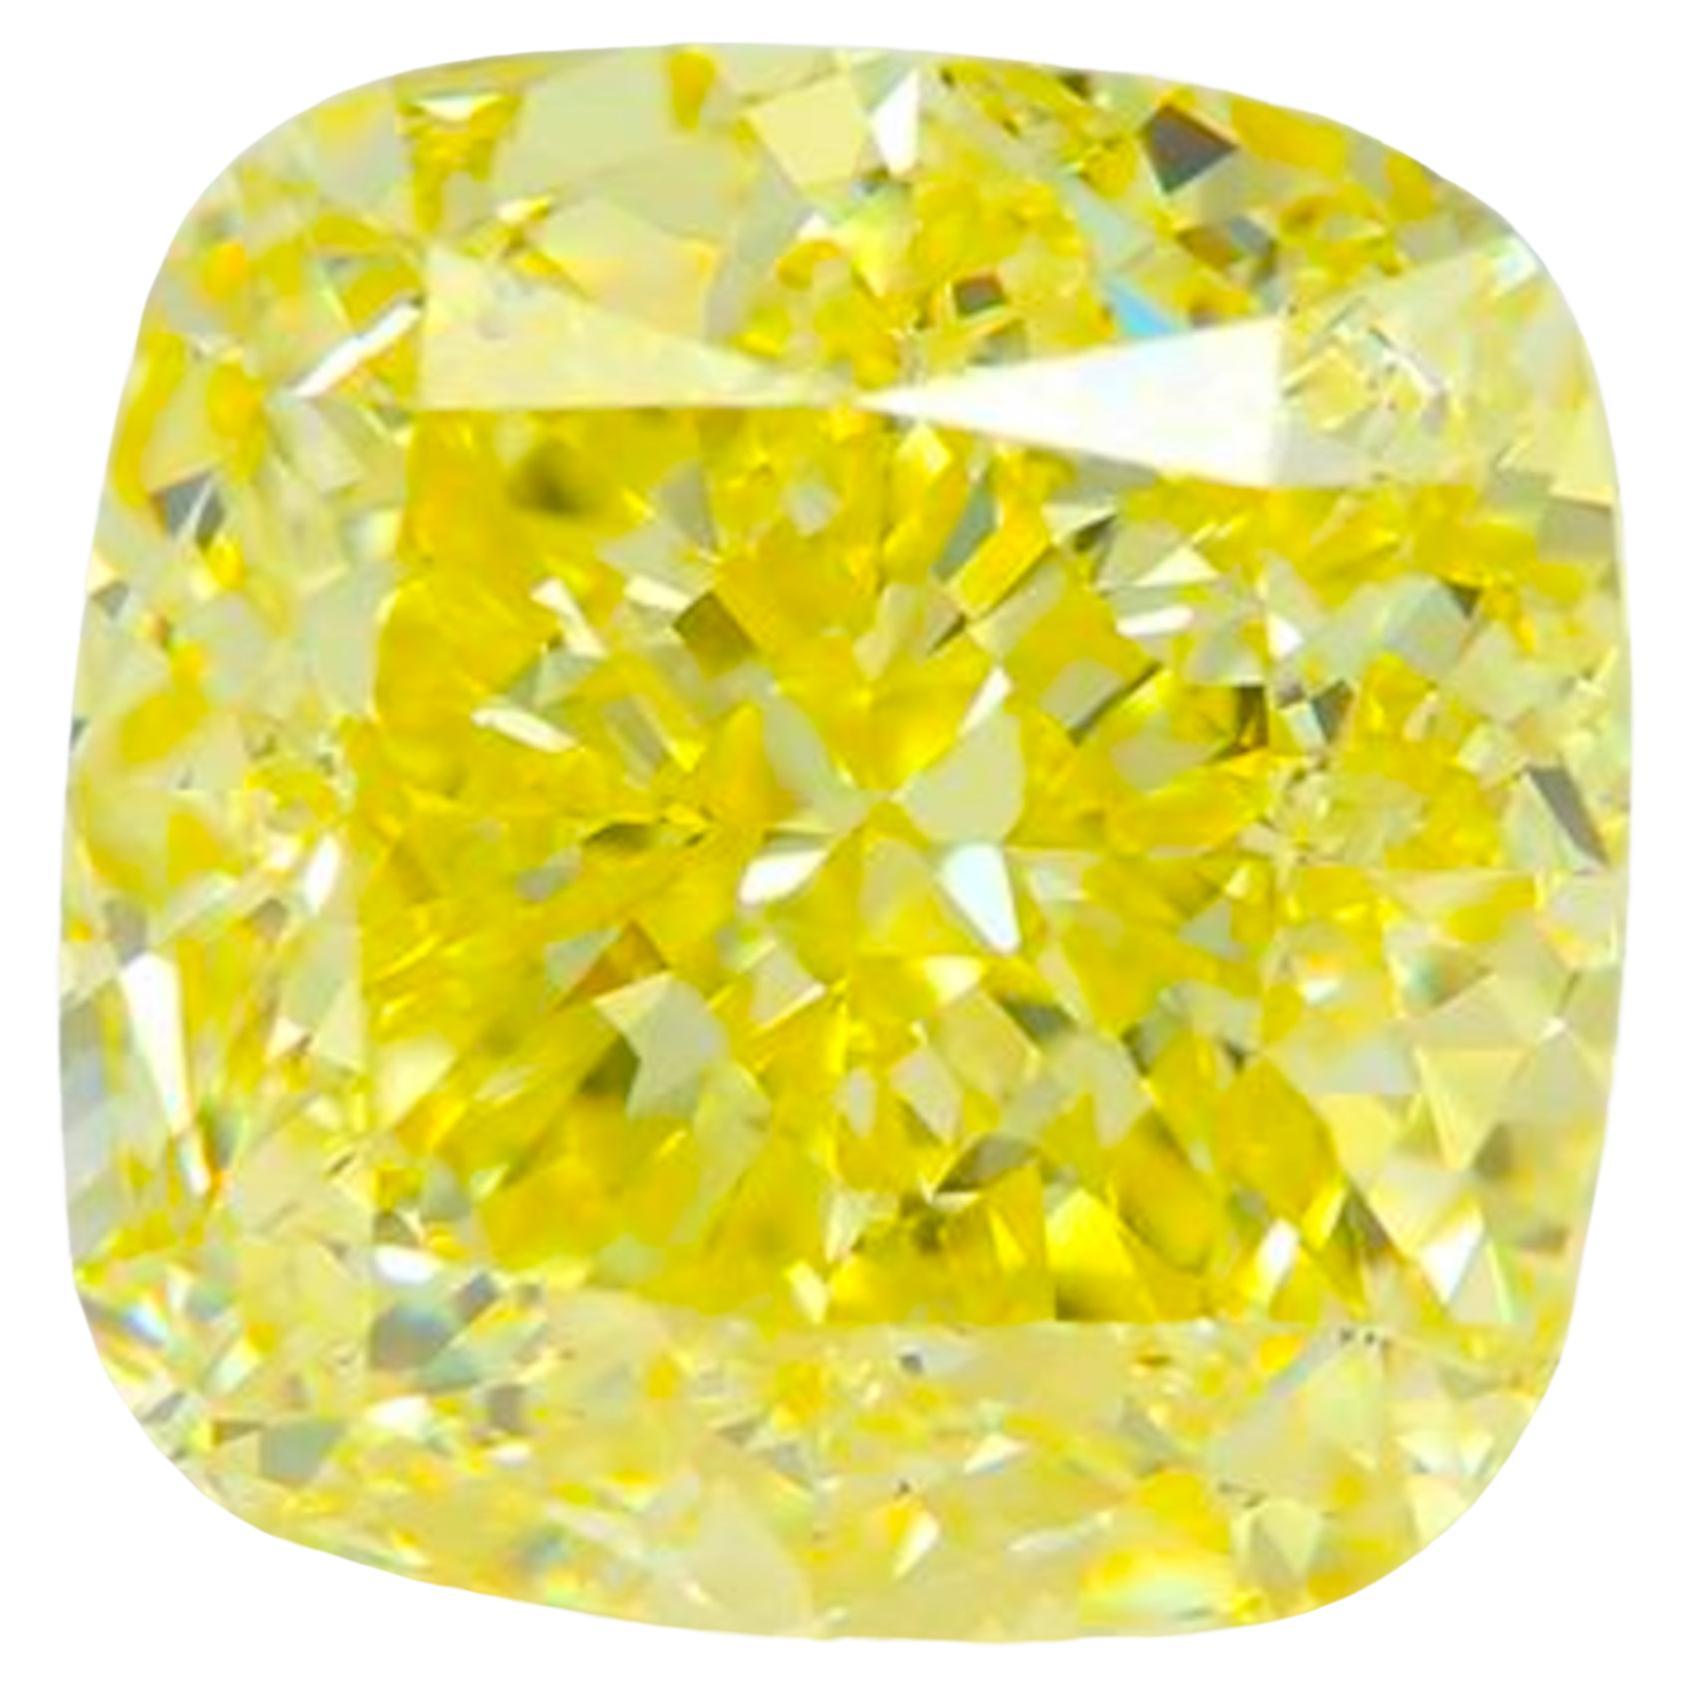 Cette bague sur mesure renferme en son cœur un resplendissant diamant coussin certifié GIA de 6,68 carats de couleur Fancy Intense Yellow, un véritable témoignage de rareté et de magnificence.

Elegamment sertie sur une luxueuse fusion de platine et